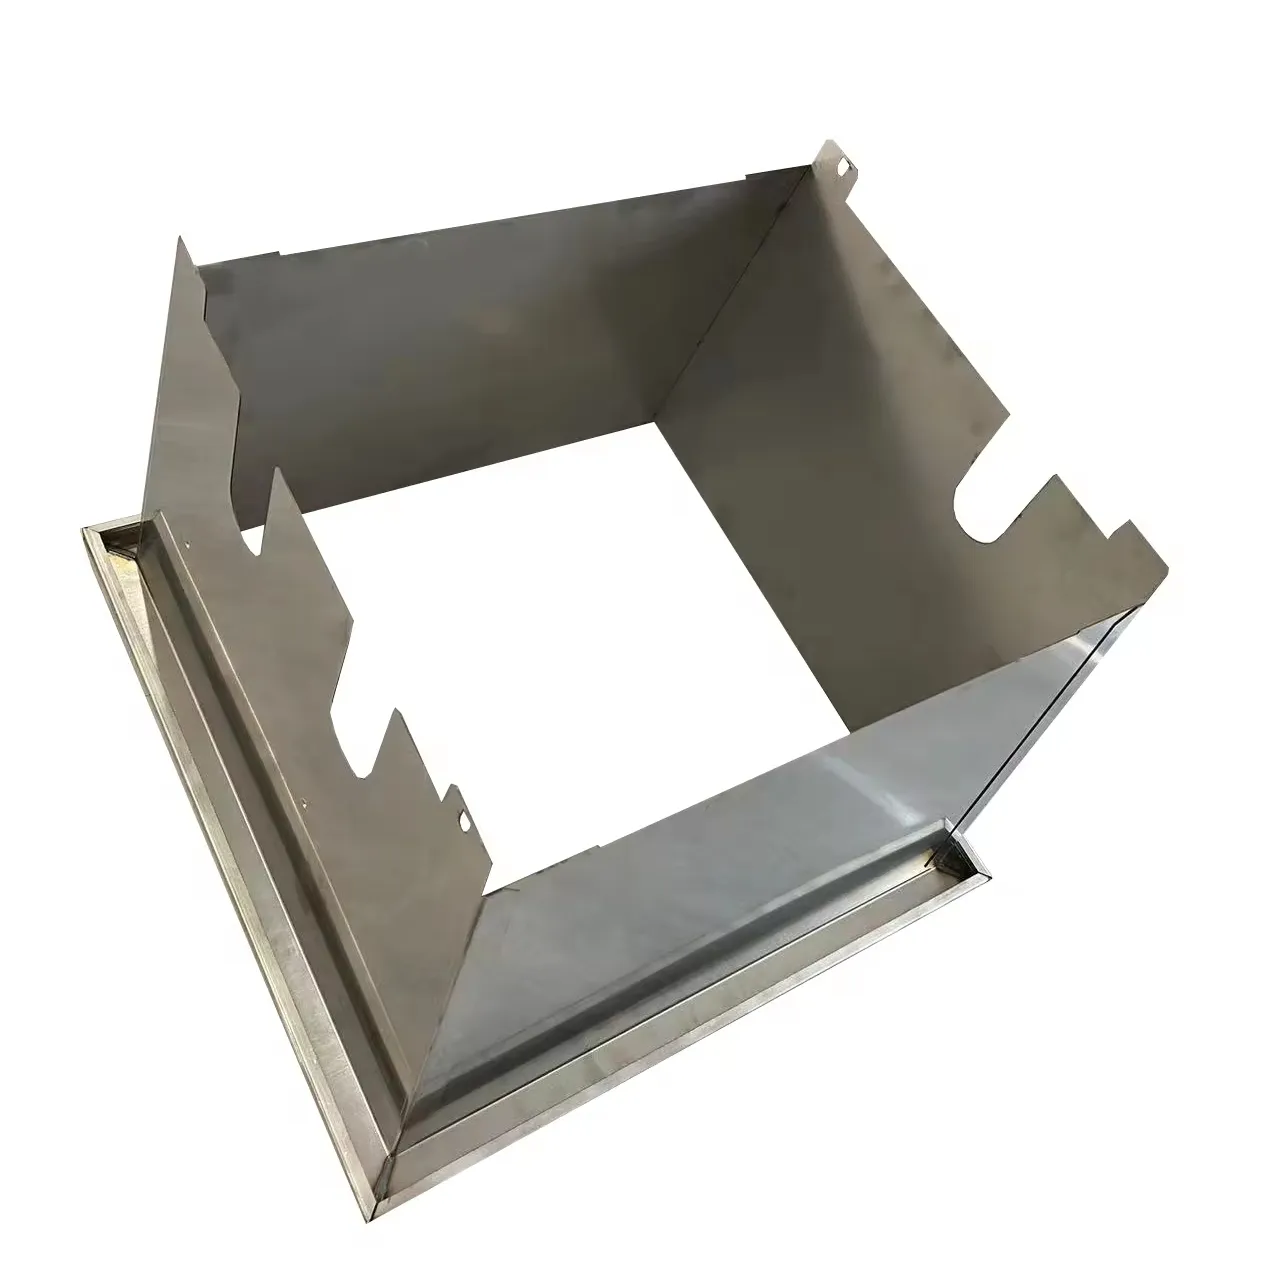 Özel OEM sac Metal damgalama delme hizmeti paslanmaz çelik alüminyum damgalı delinmiş bileşen parçaları imalat